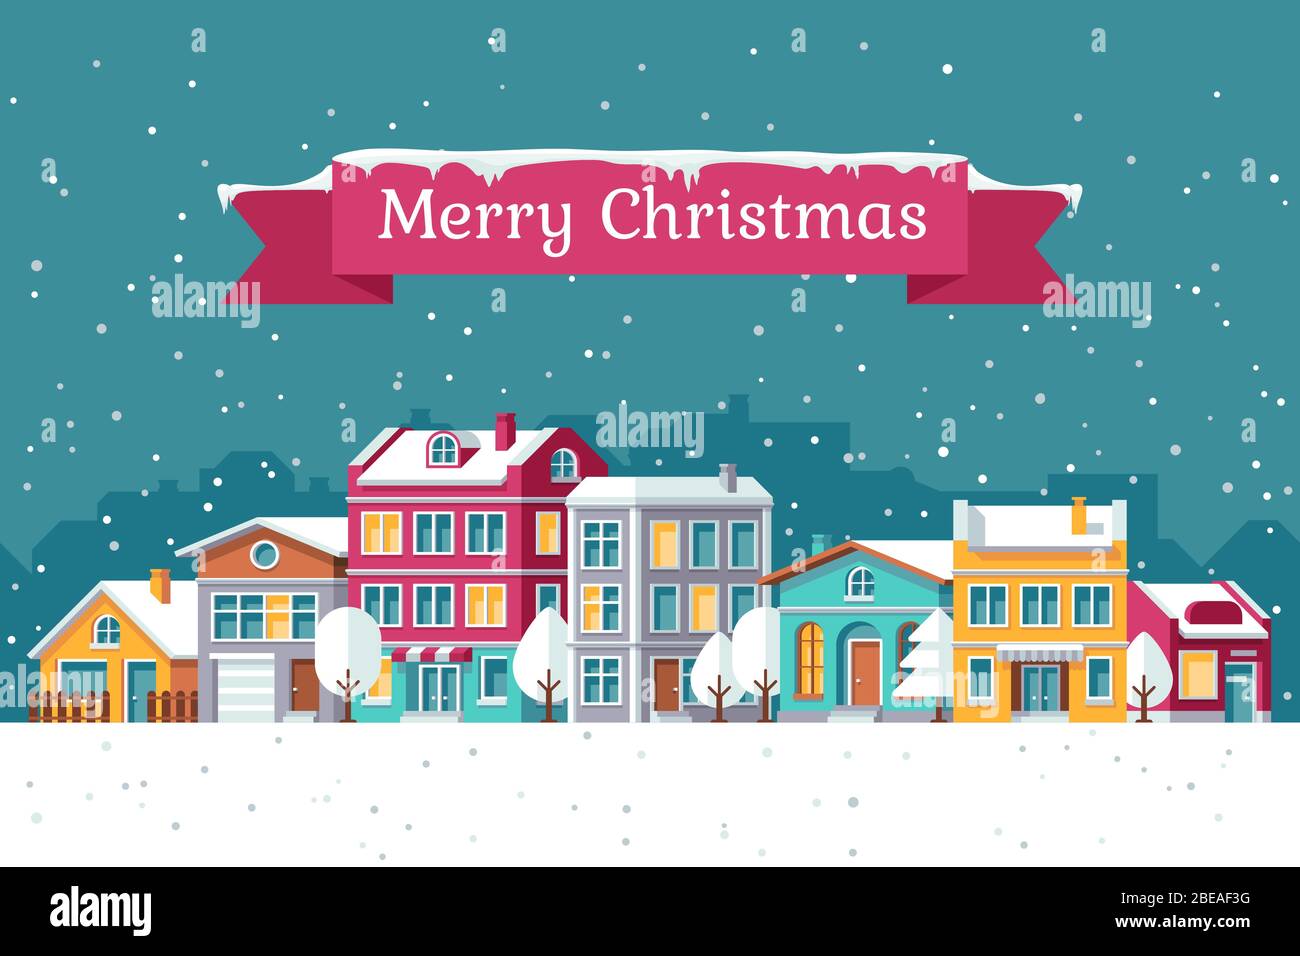 Weihnachten Urlaub Vektor Grußkarte mit Winter Stadtbild im Schnee. Weihnachten Stadthaus, Stadtbild Winter Illustration Stock Vektor